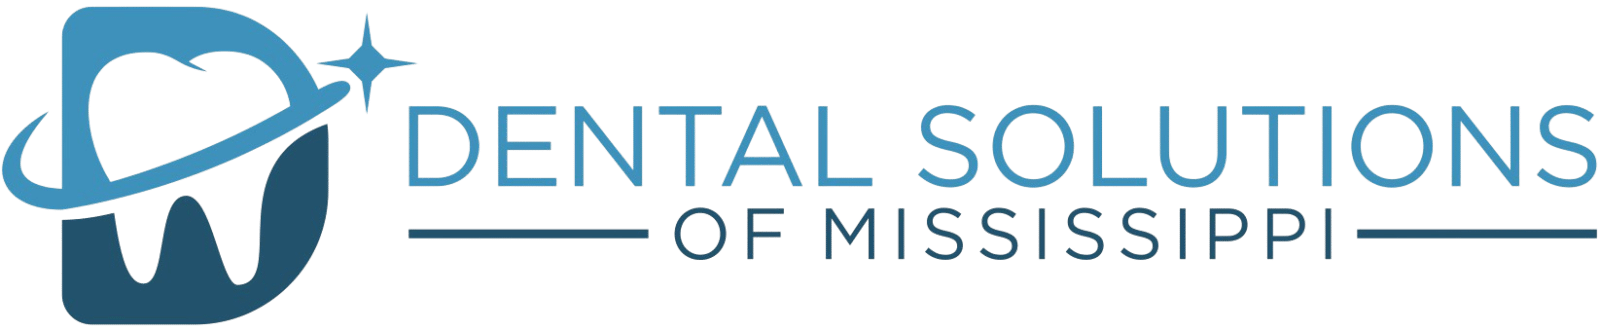 Dental solutions of mississippi logo header Dental Solutions of Mississippi dentist in Canton MS Dr. Ruth Roach Morgan Dr. Jessica Morgan